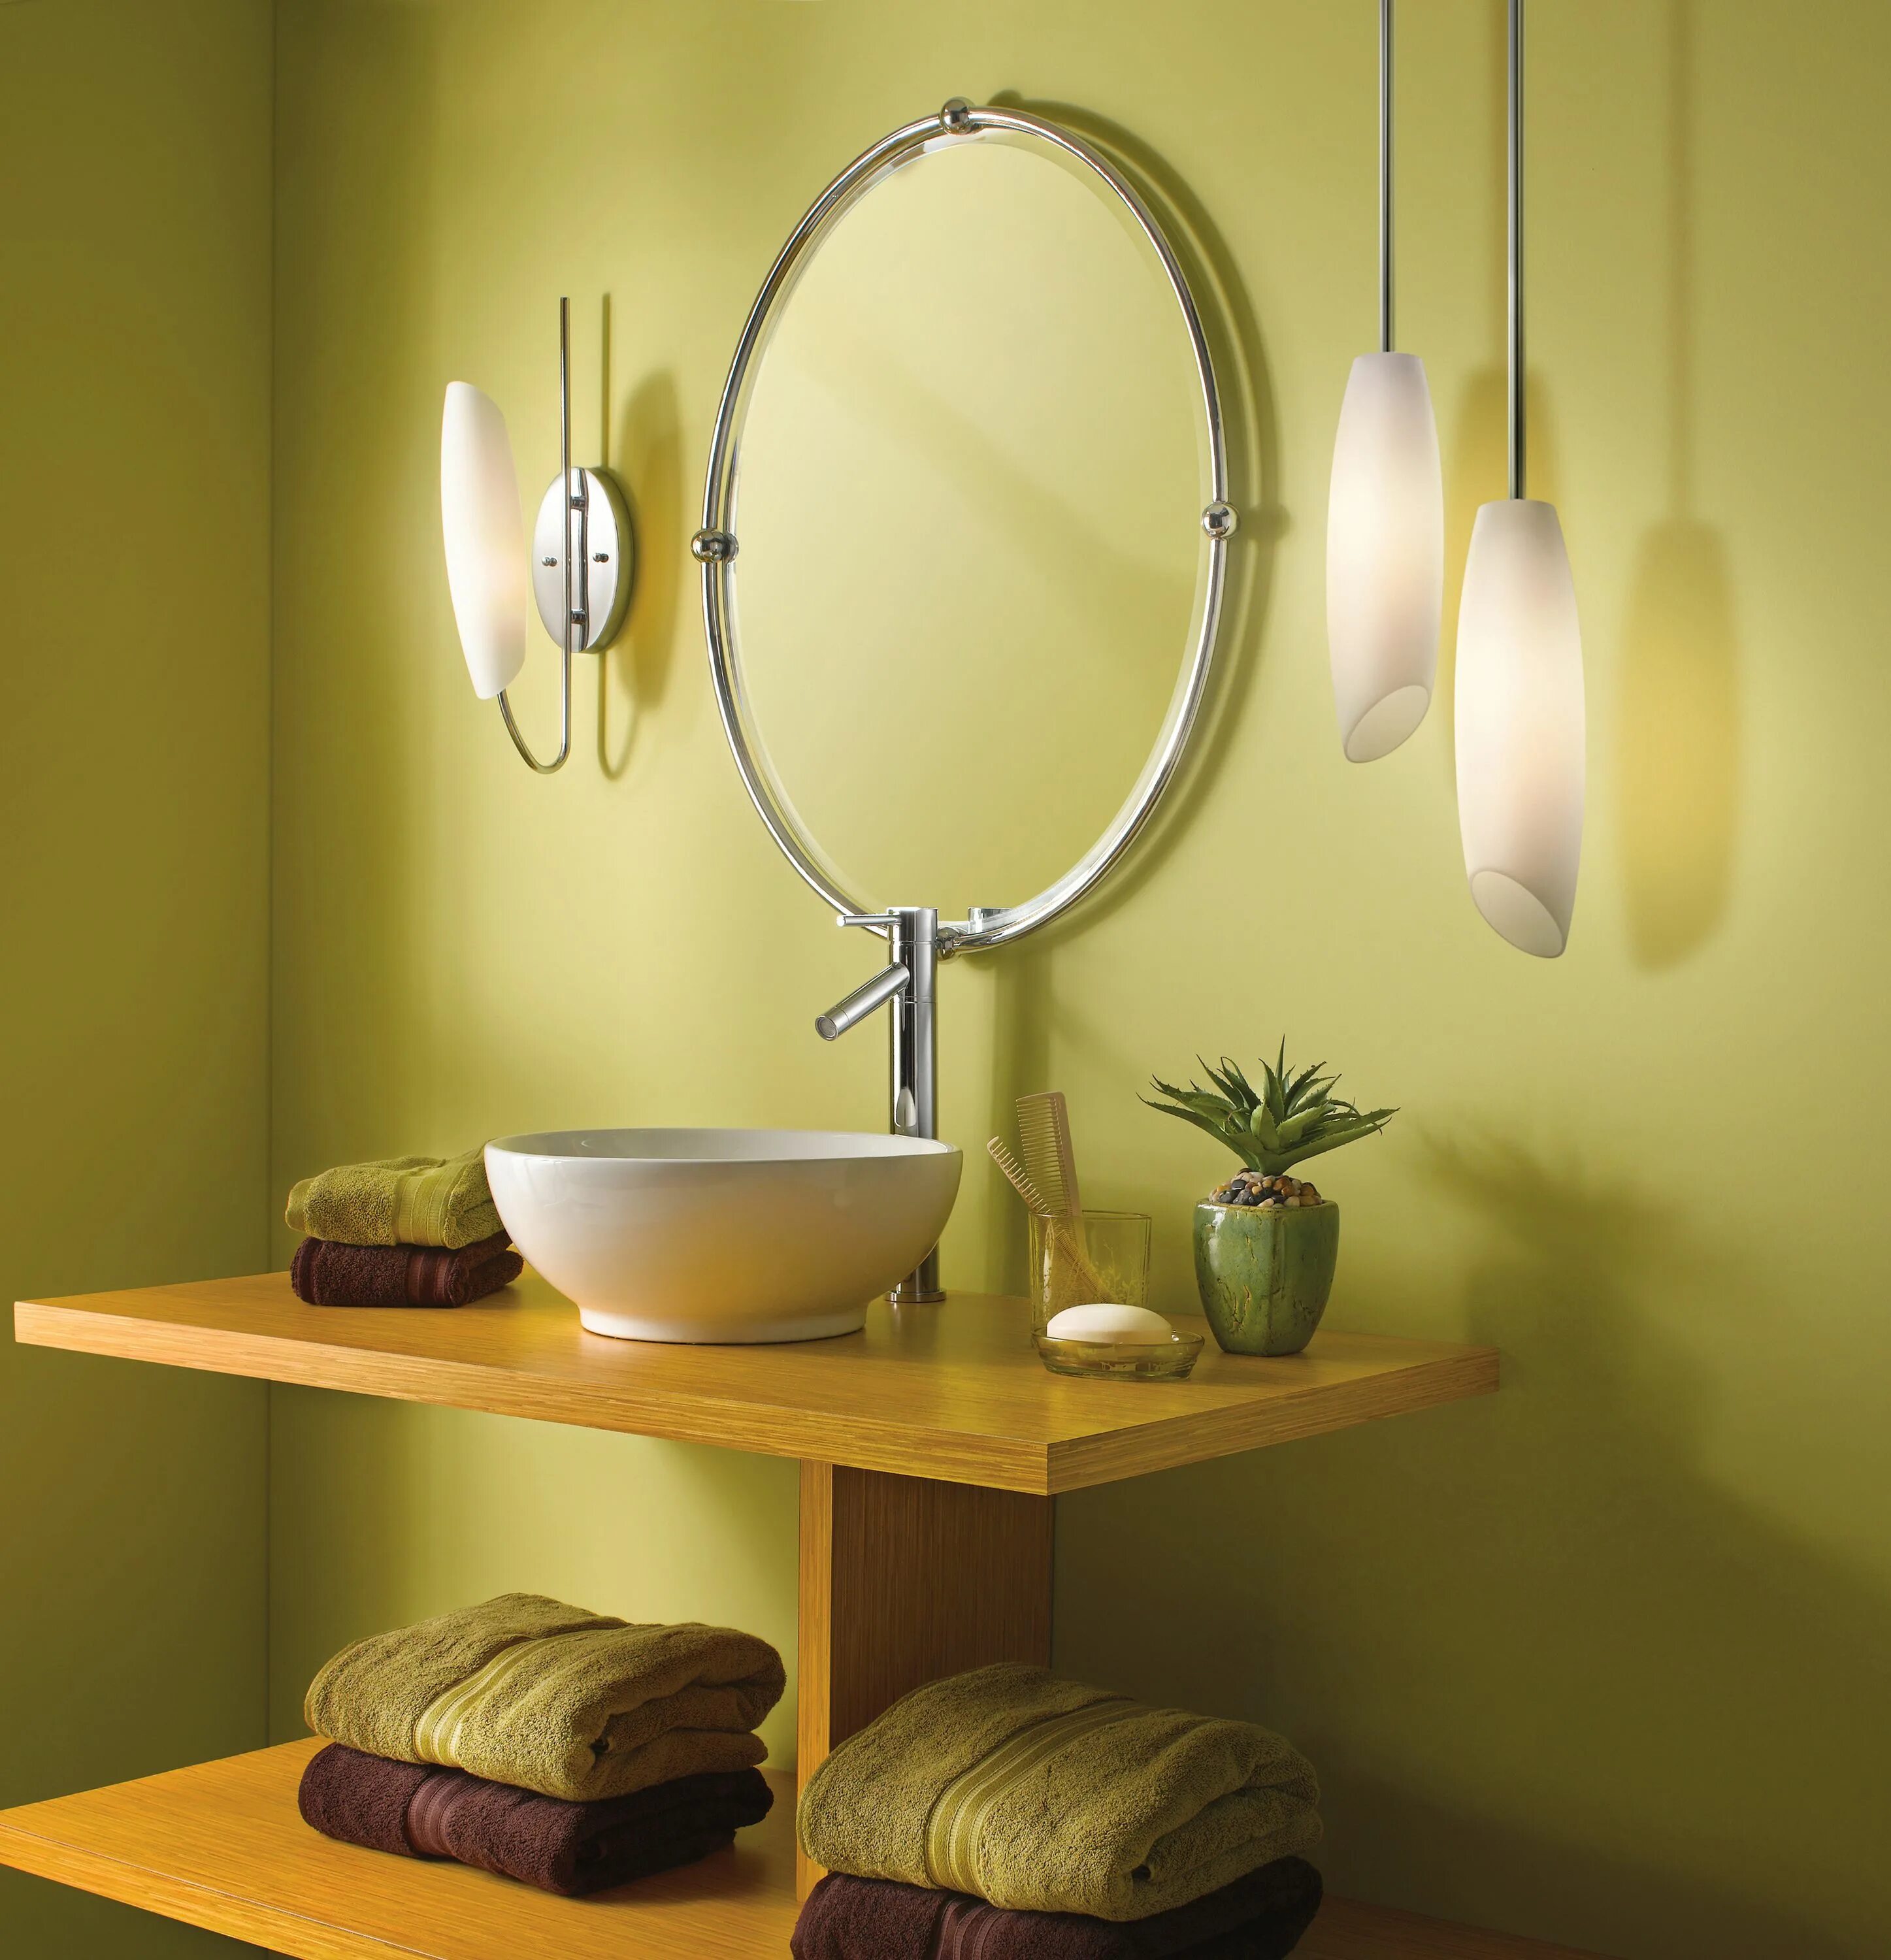 Подвесное зеркало для ванной. Светильники для ванной комнаты. Подвесные светильники в ванной. Светильники подвесы для ванной комнаты. Свисающие светильники для ванной комнаты.